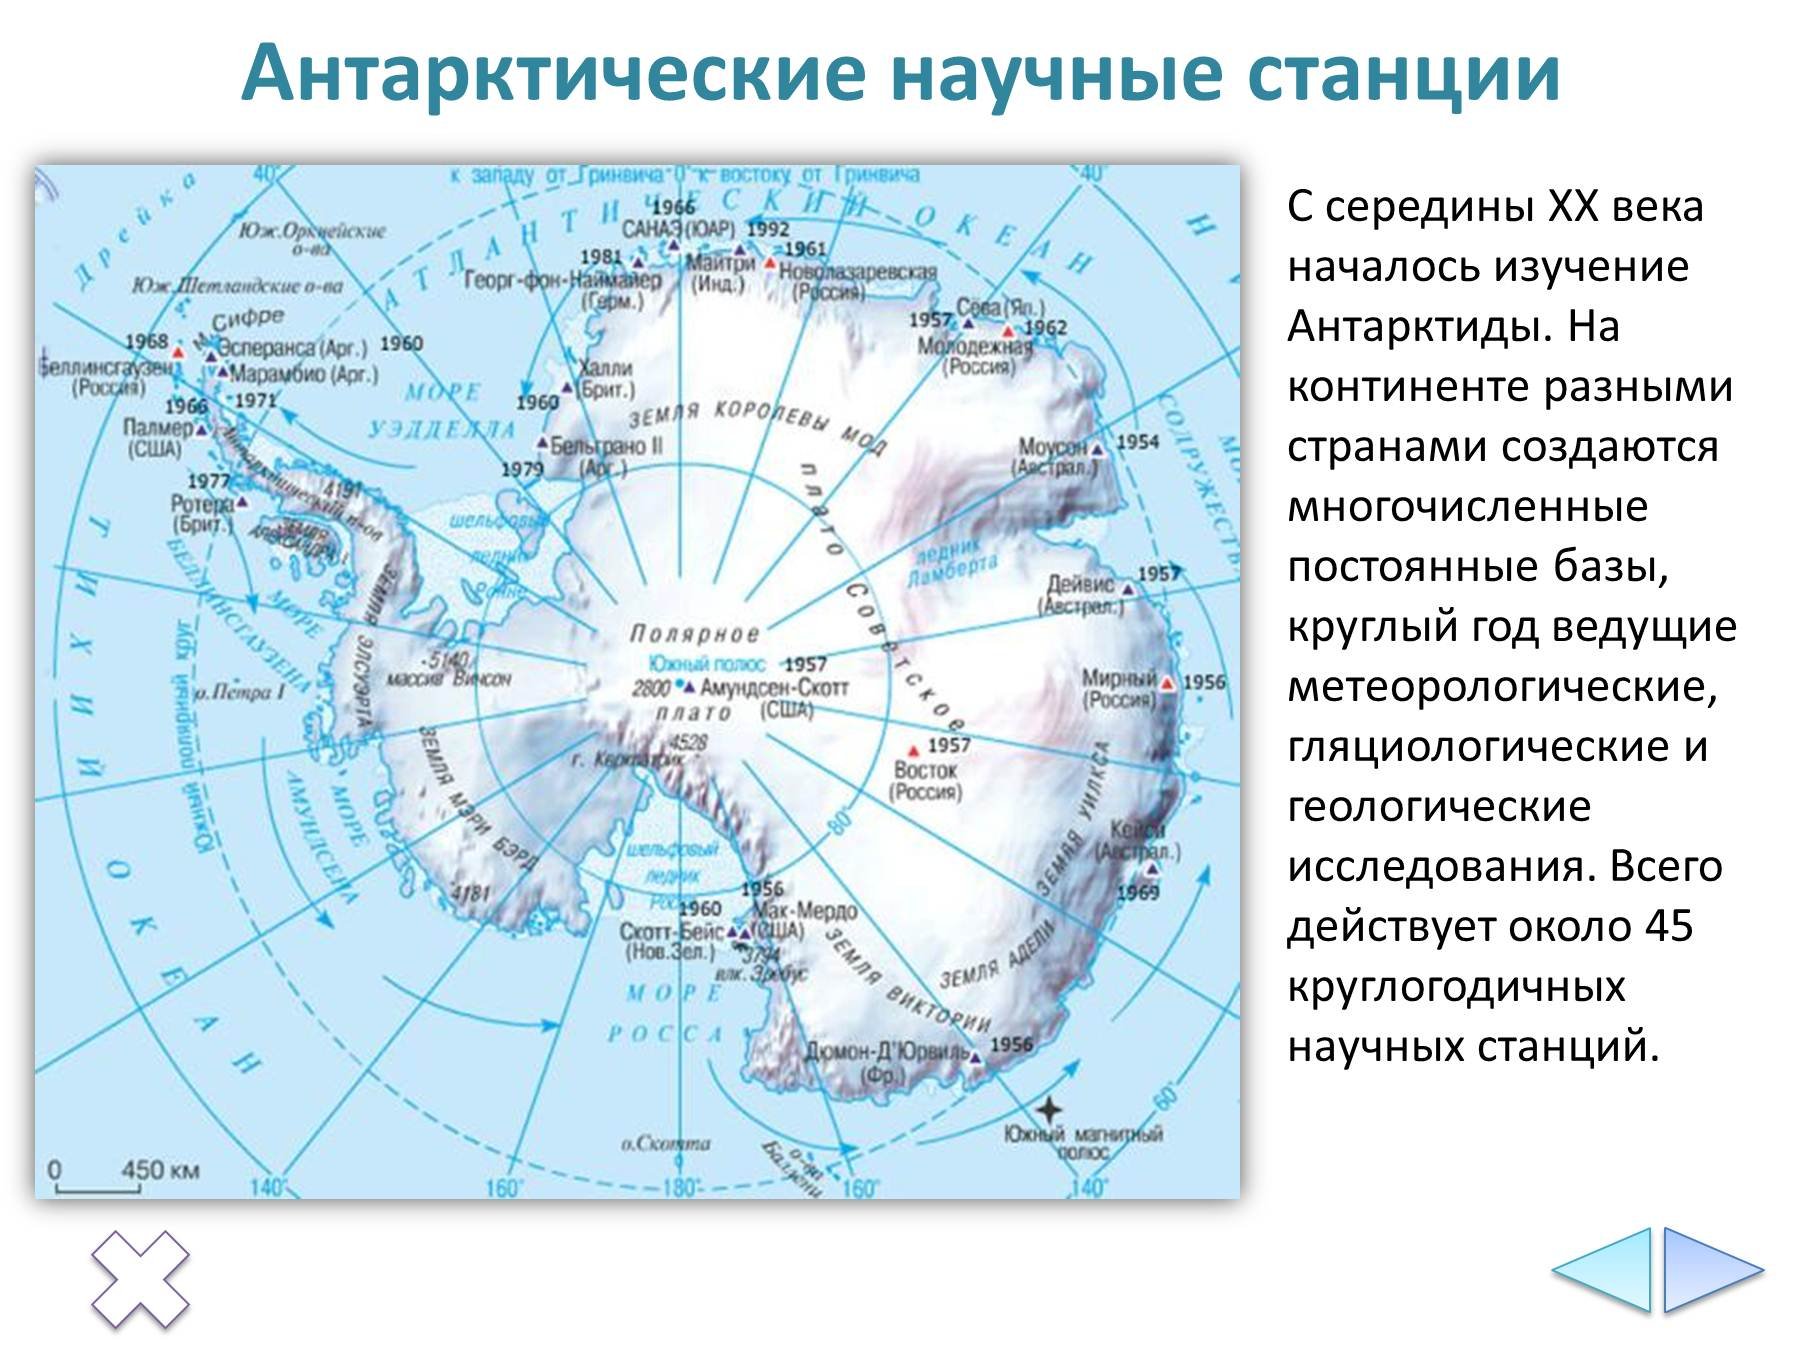 Сколько стран расположено на территории антарктиды